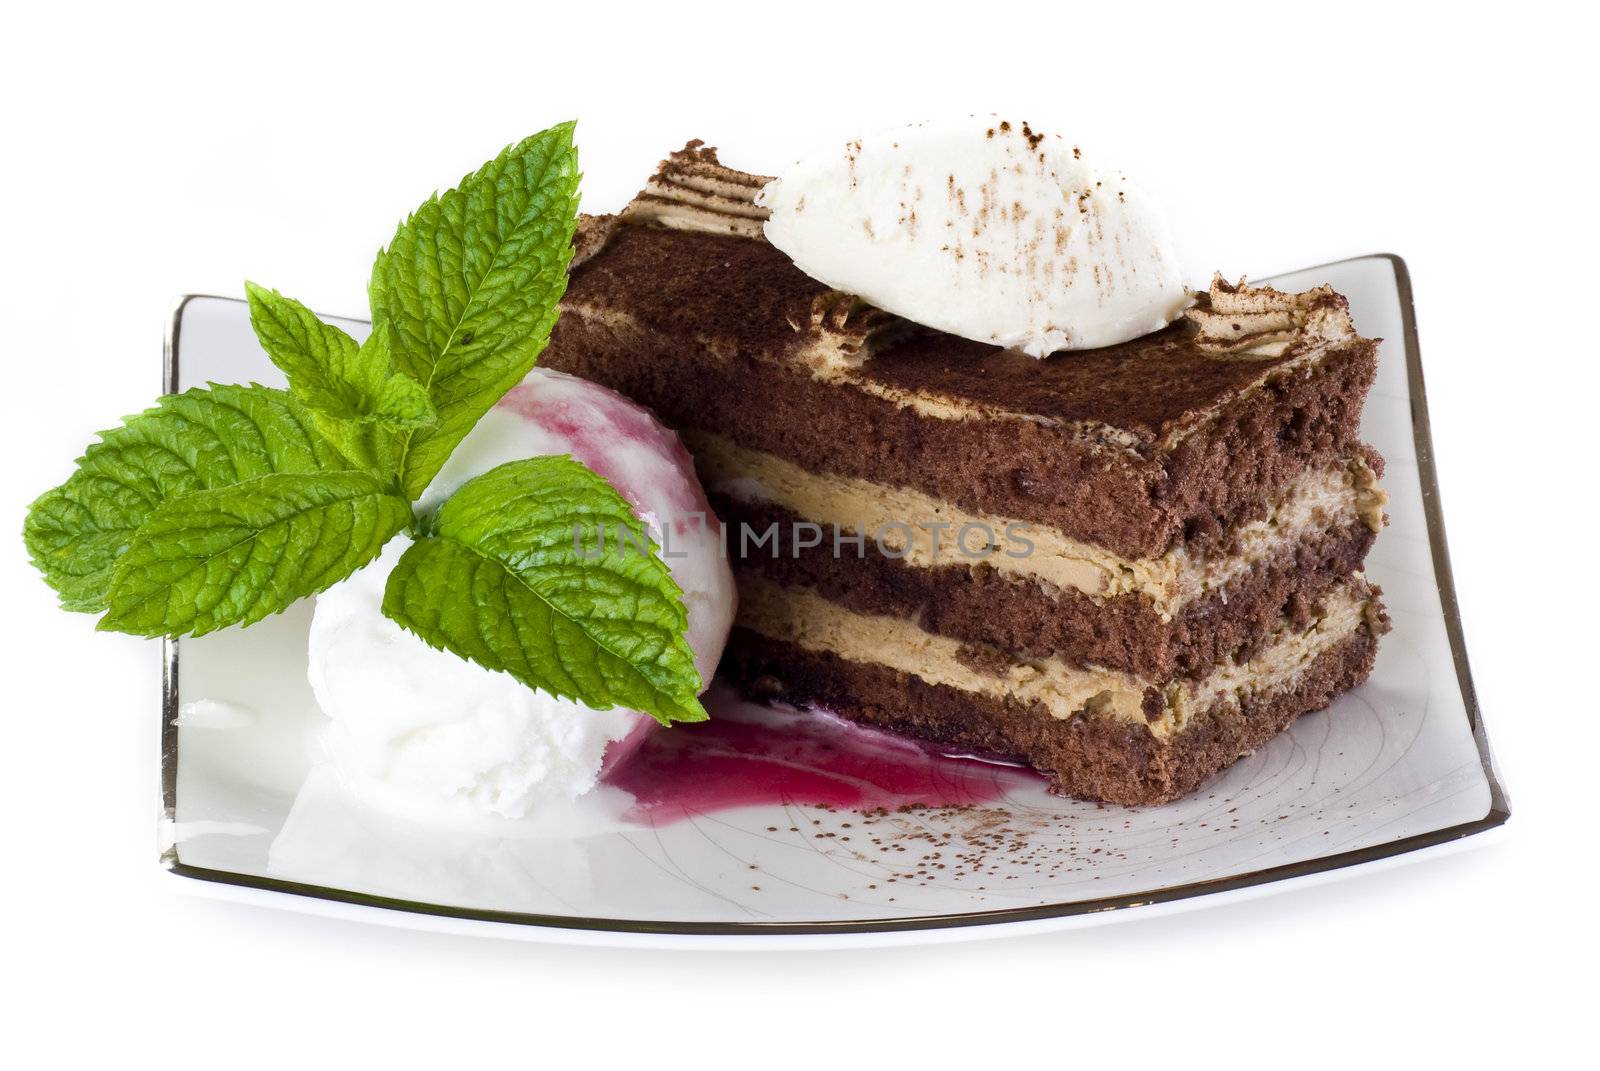 Tiramisu cake with ice cream by caldix